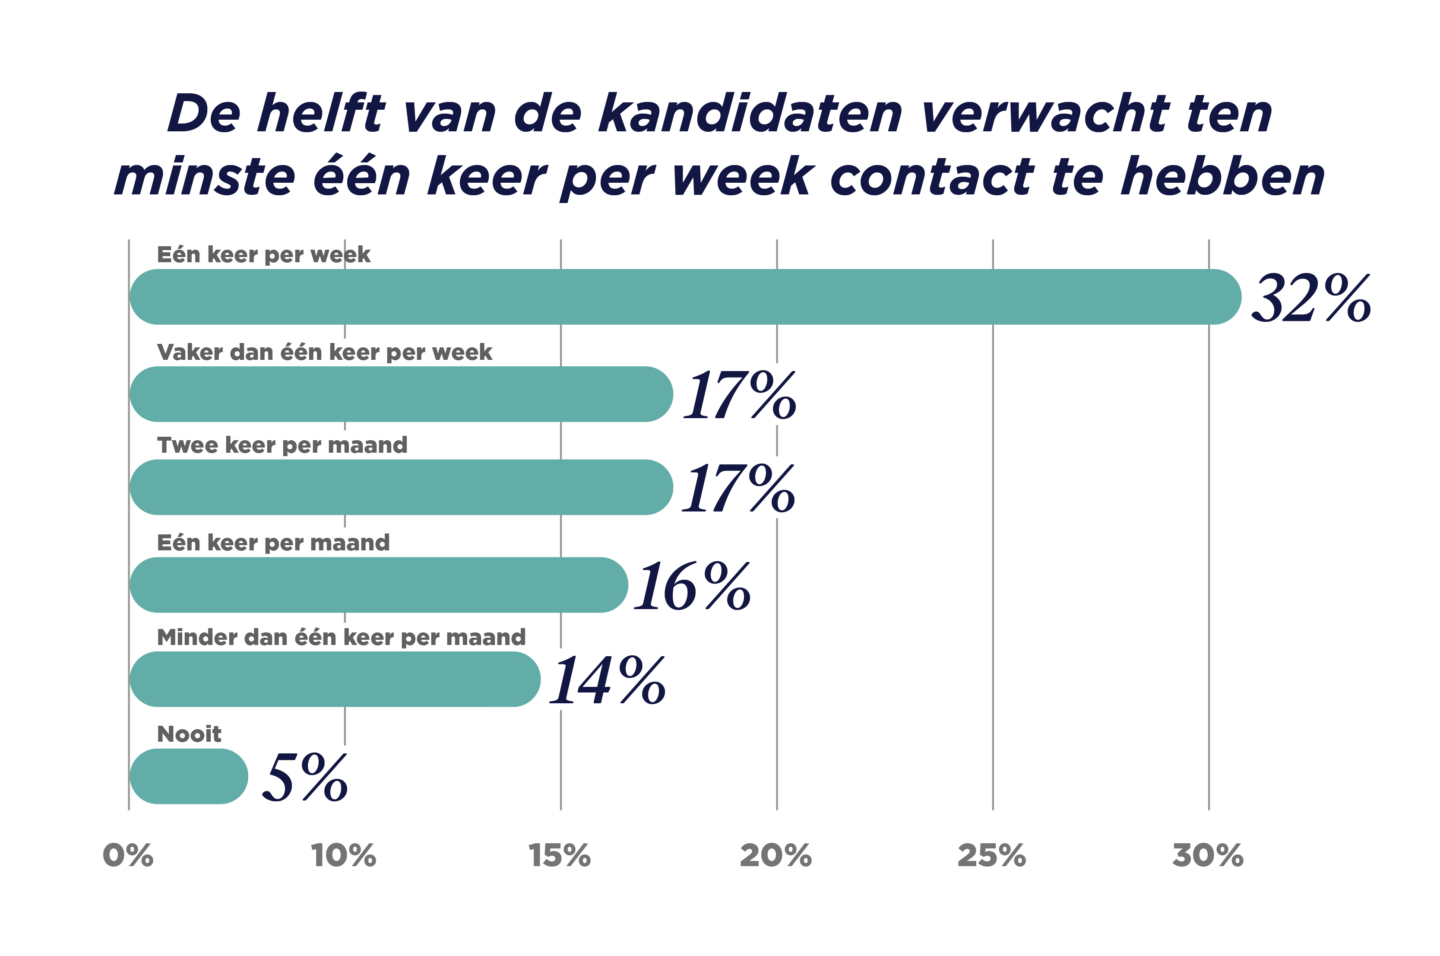 GRID_Talent Trends Report 2023_Benelux Graphs_De helft van de kandidaten verwacht ten minste één keer per week contact te hebben_V1